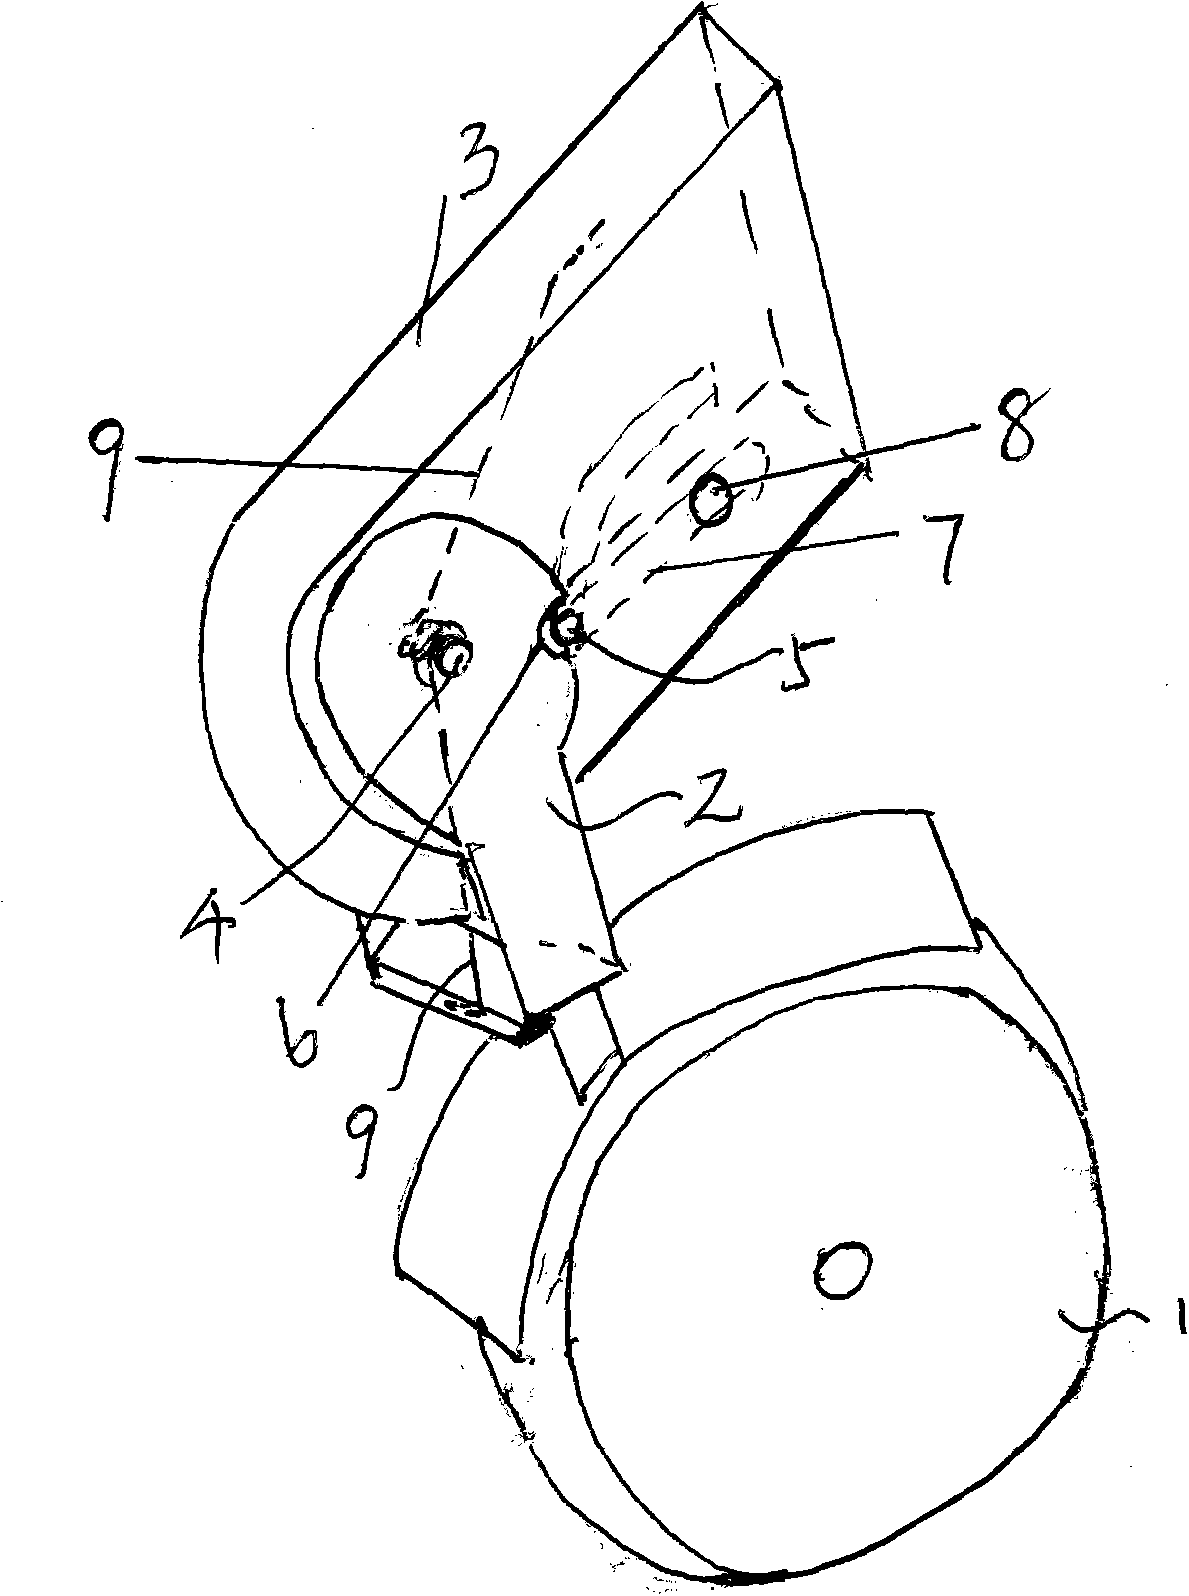 Rotatable castor mechanism for household